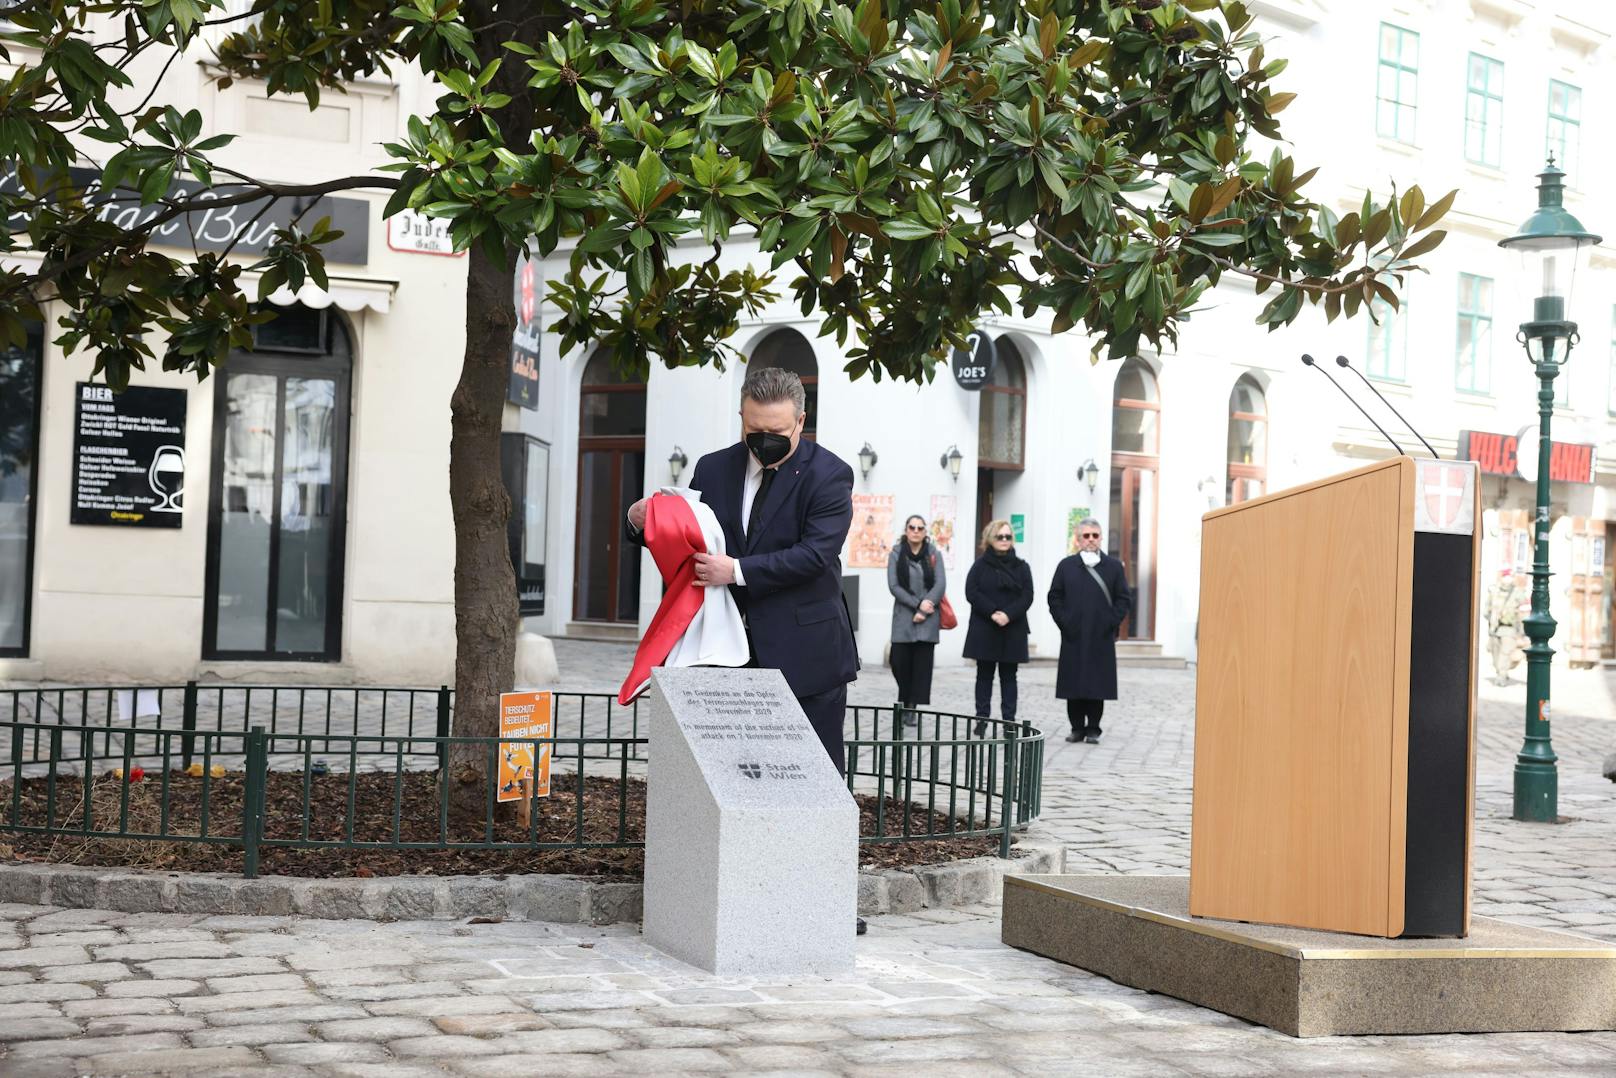 Die Wiener Stadtregierung enthüllte am Dienstag am Desider-Friedmann-Platz in der Wiener Innenstadt den Gedenkstein für die Opfer des Terroranschlags am 2. November in der City. Vier Personen wurden getötet und 23 weitere teils schwer verletzt.